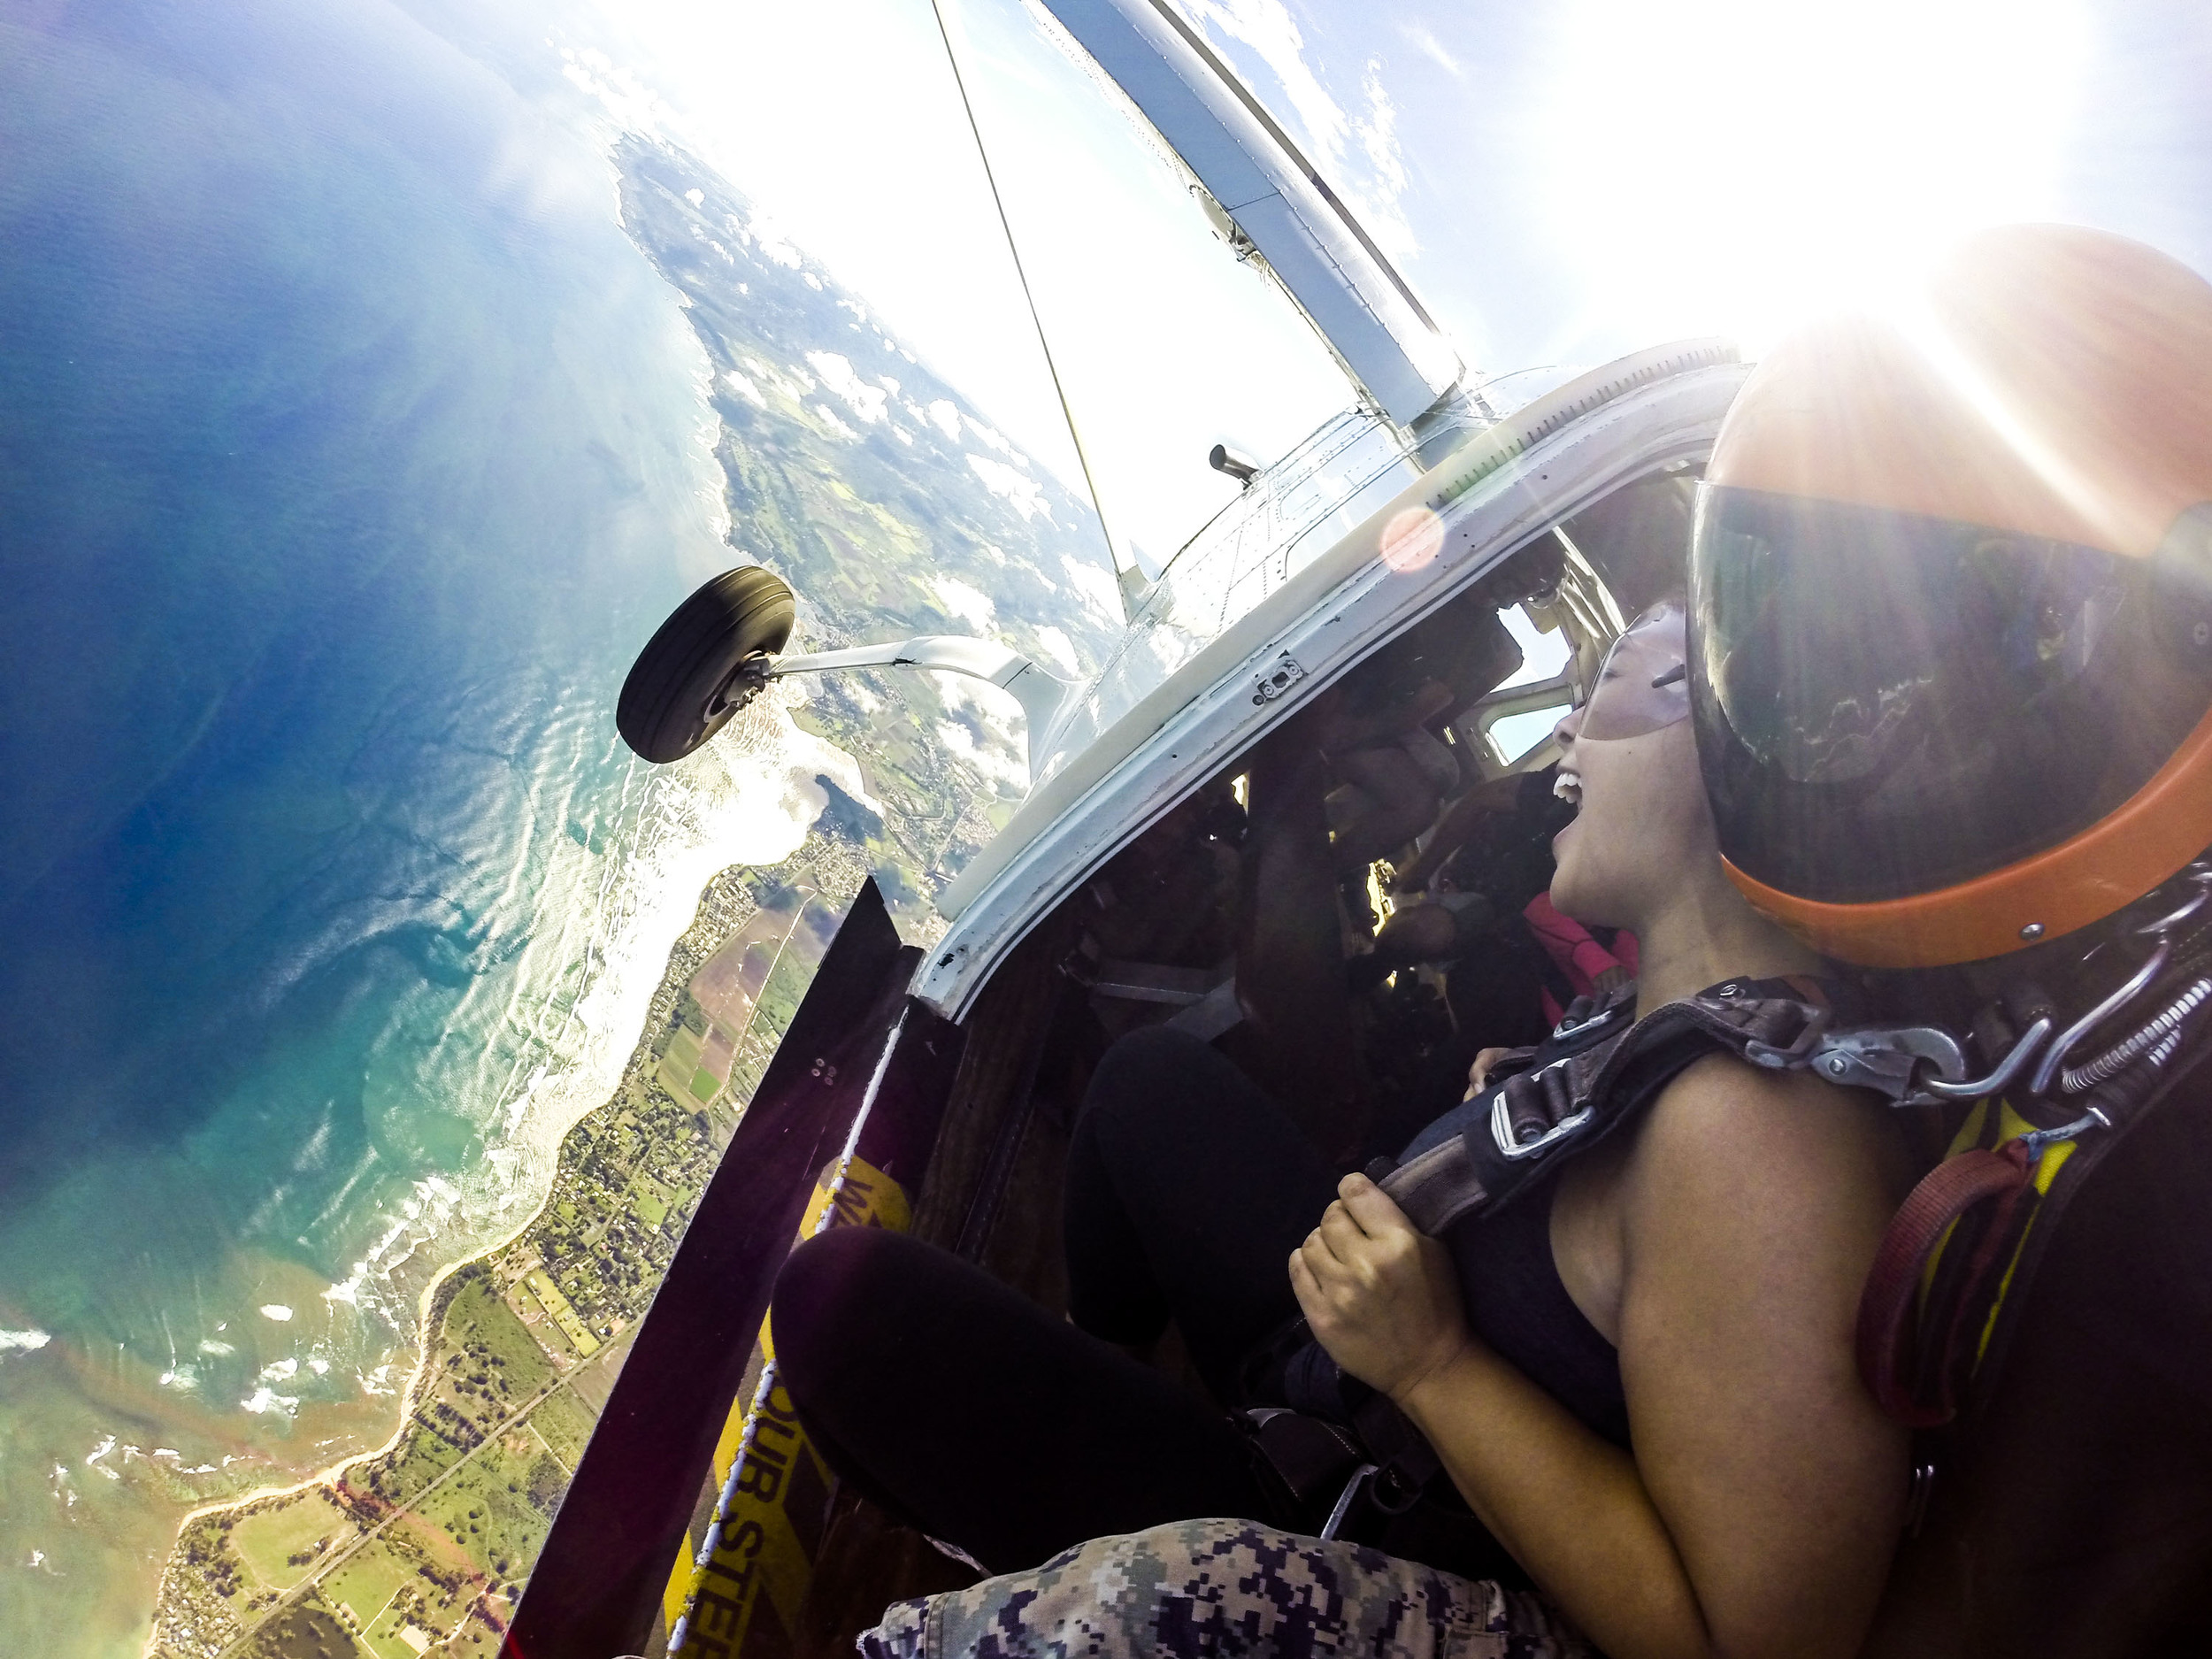 Skydive Hawaii